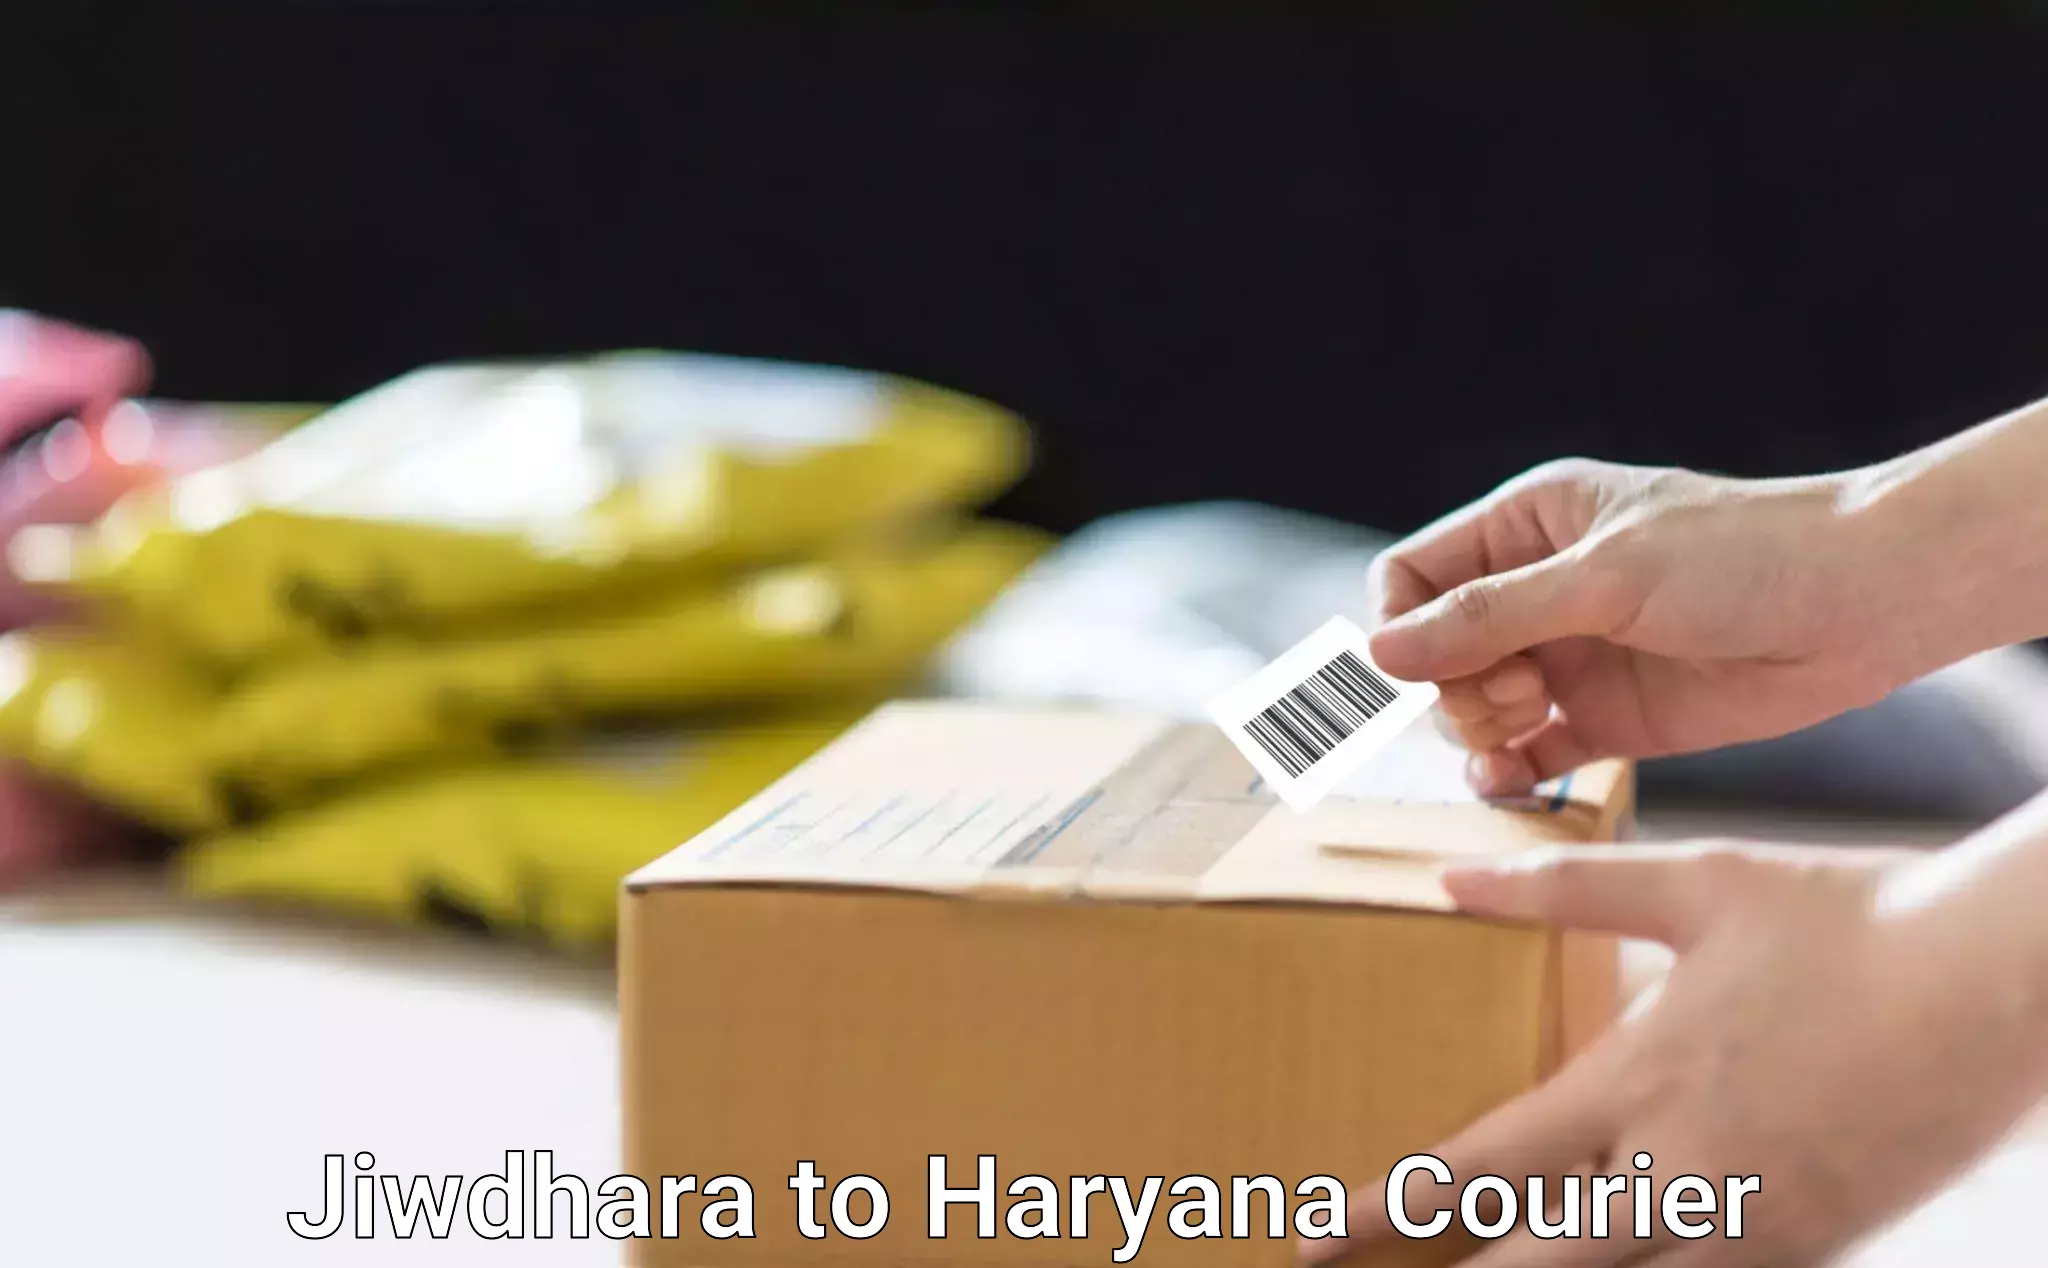 Skilled furniture movers Jiwdhara to Dharuhera